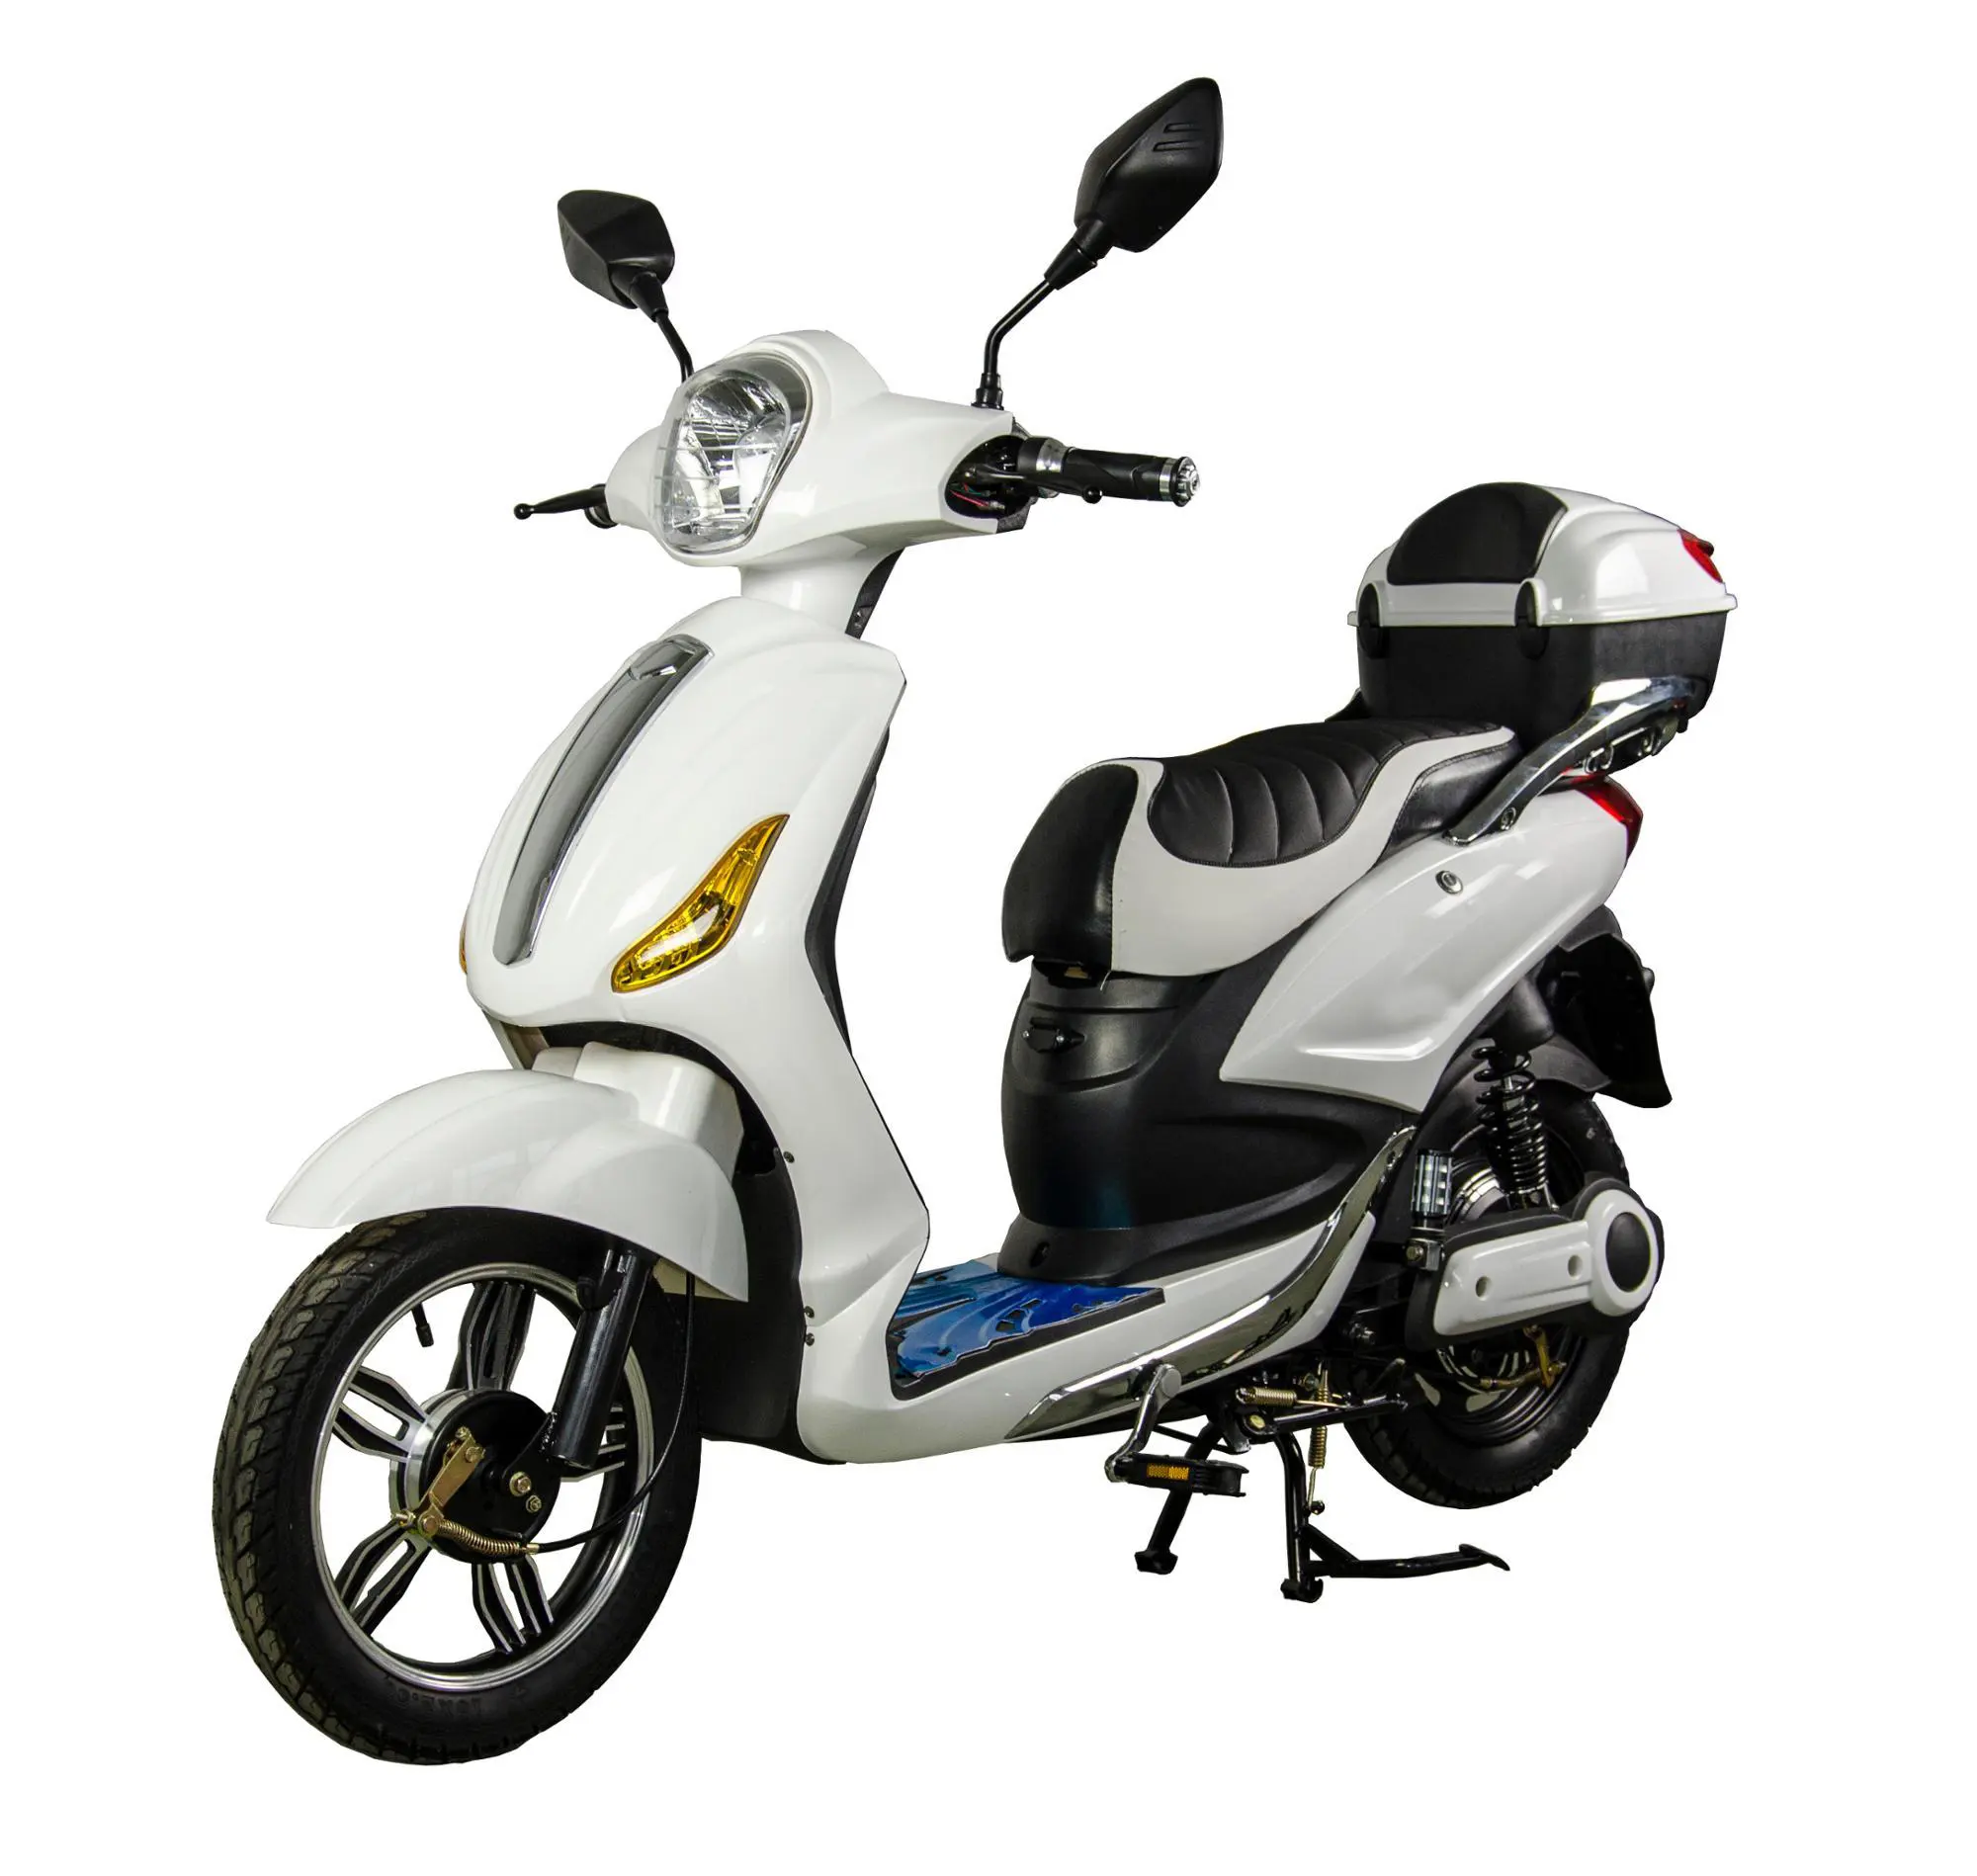 Scooter elettrici per ciclomotori ad alta velocità 800w approvati cee economici in vendita